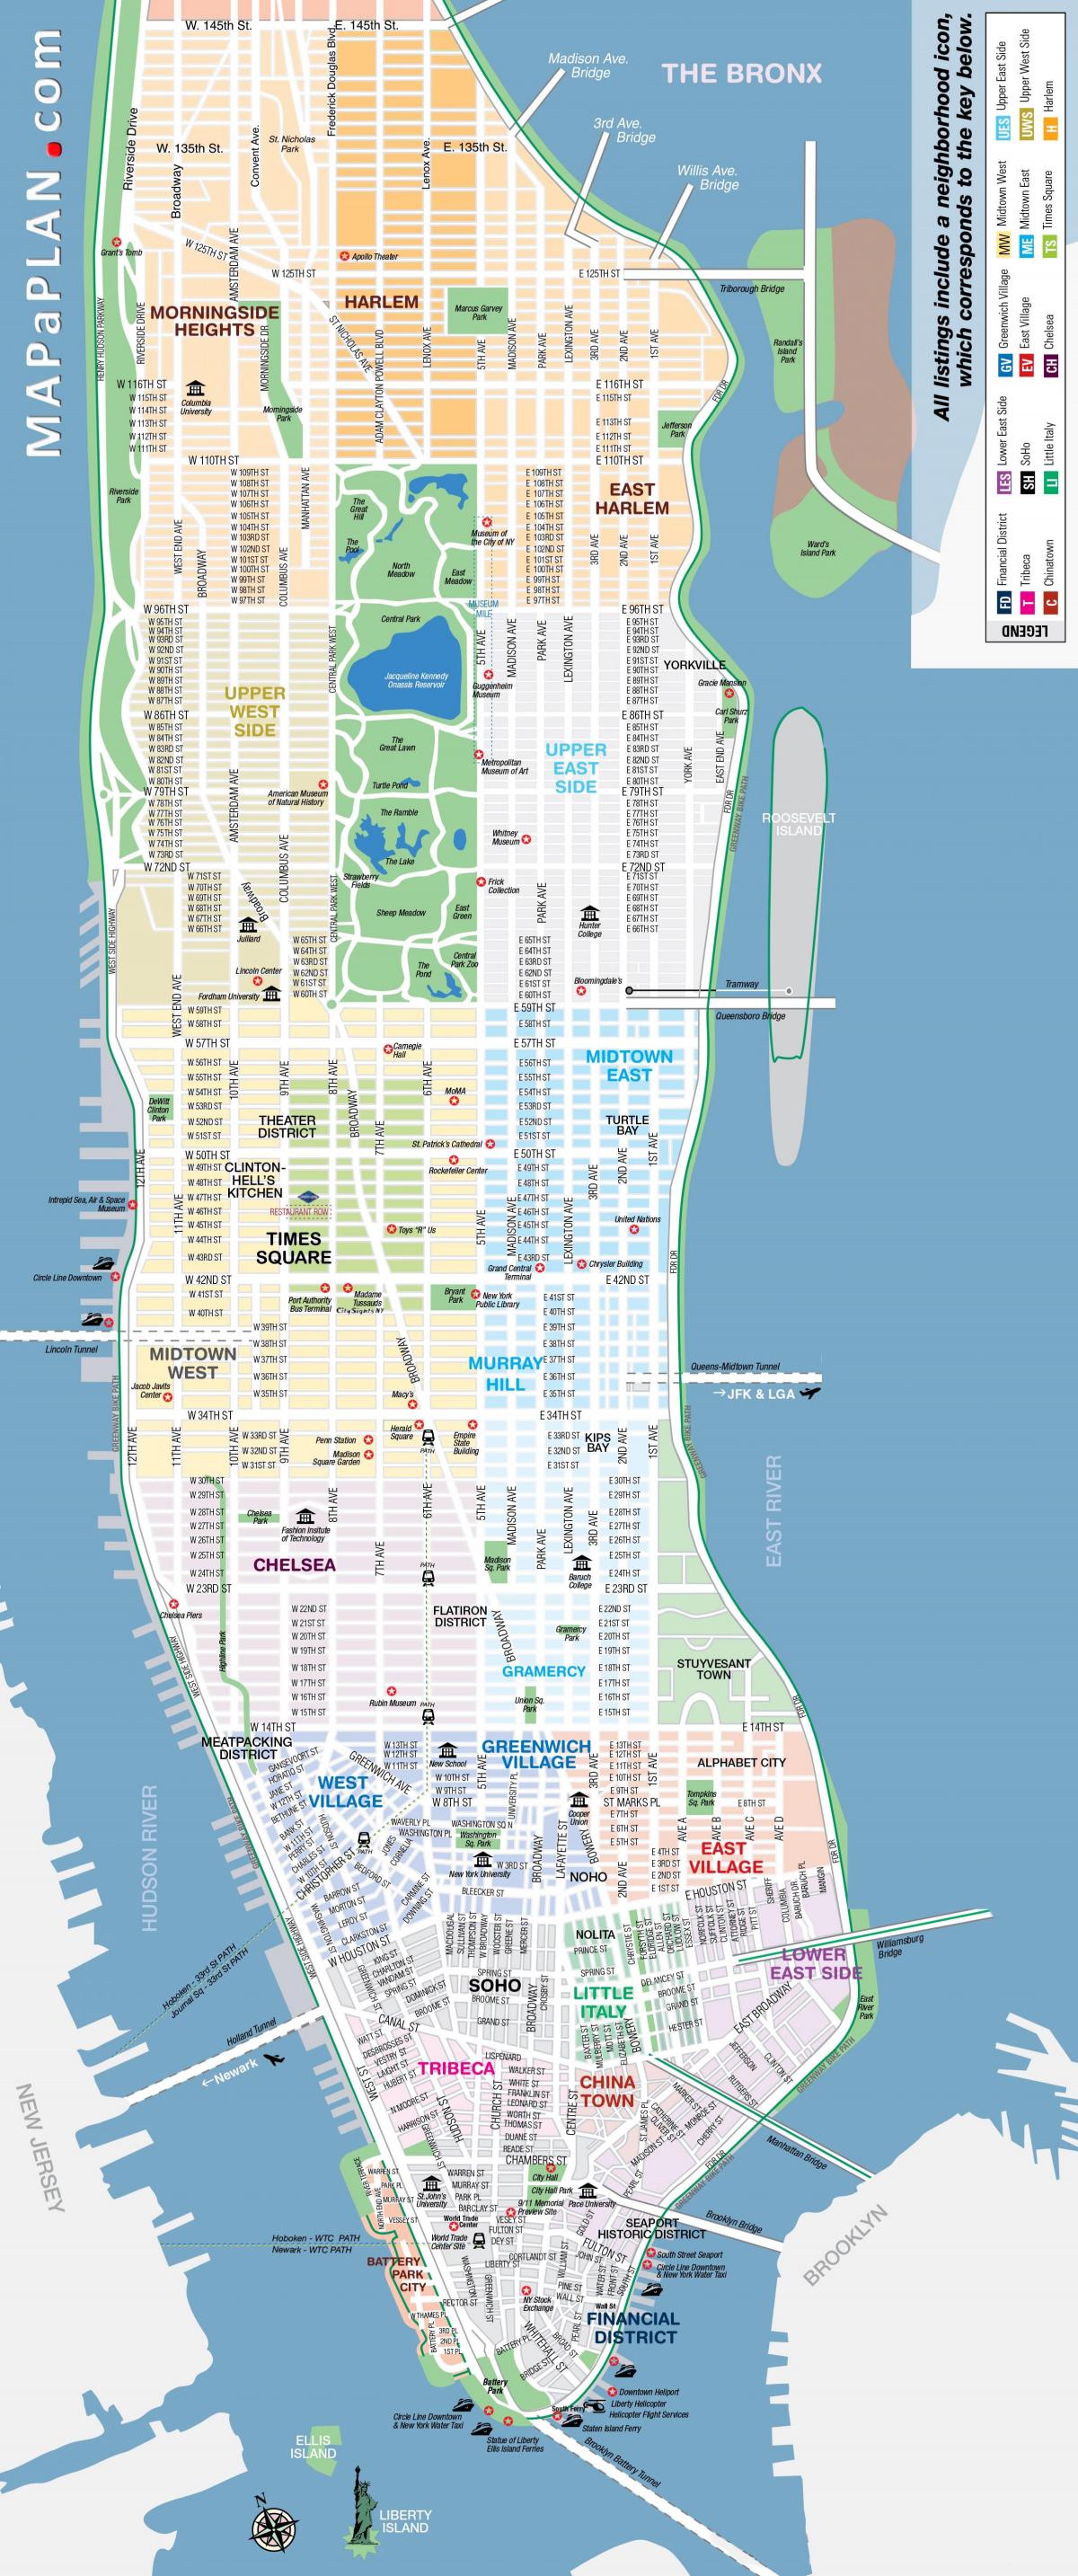 prosto za tiskanje zemljevida Manhattan, new yorku